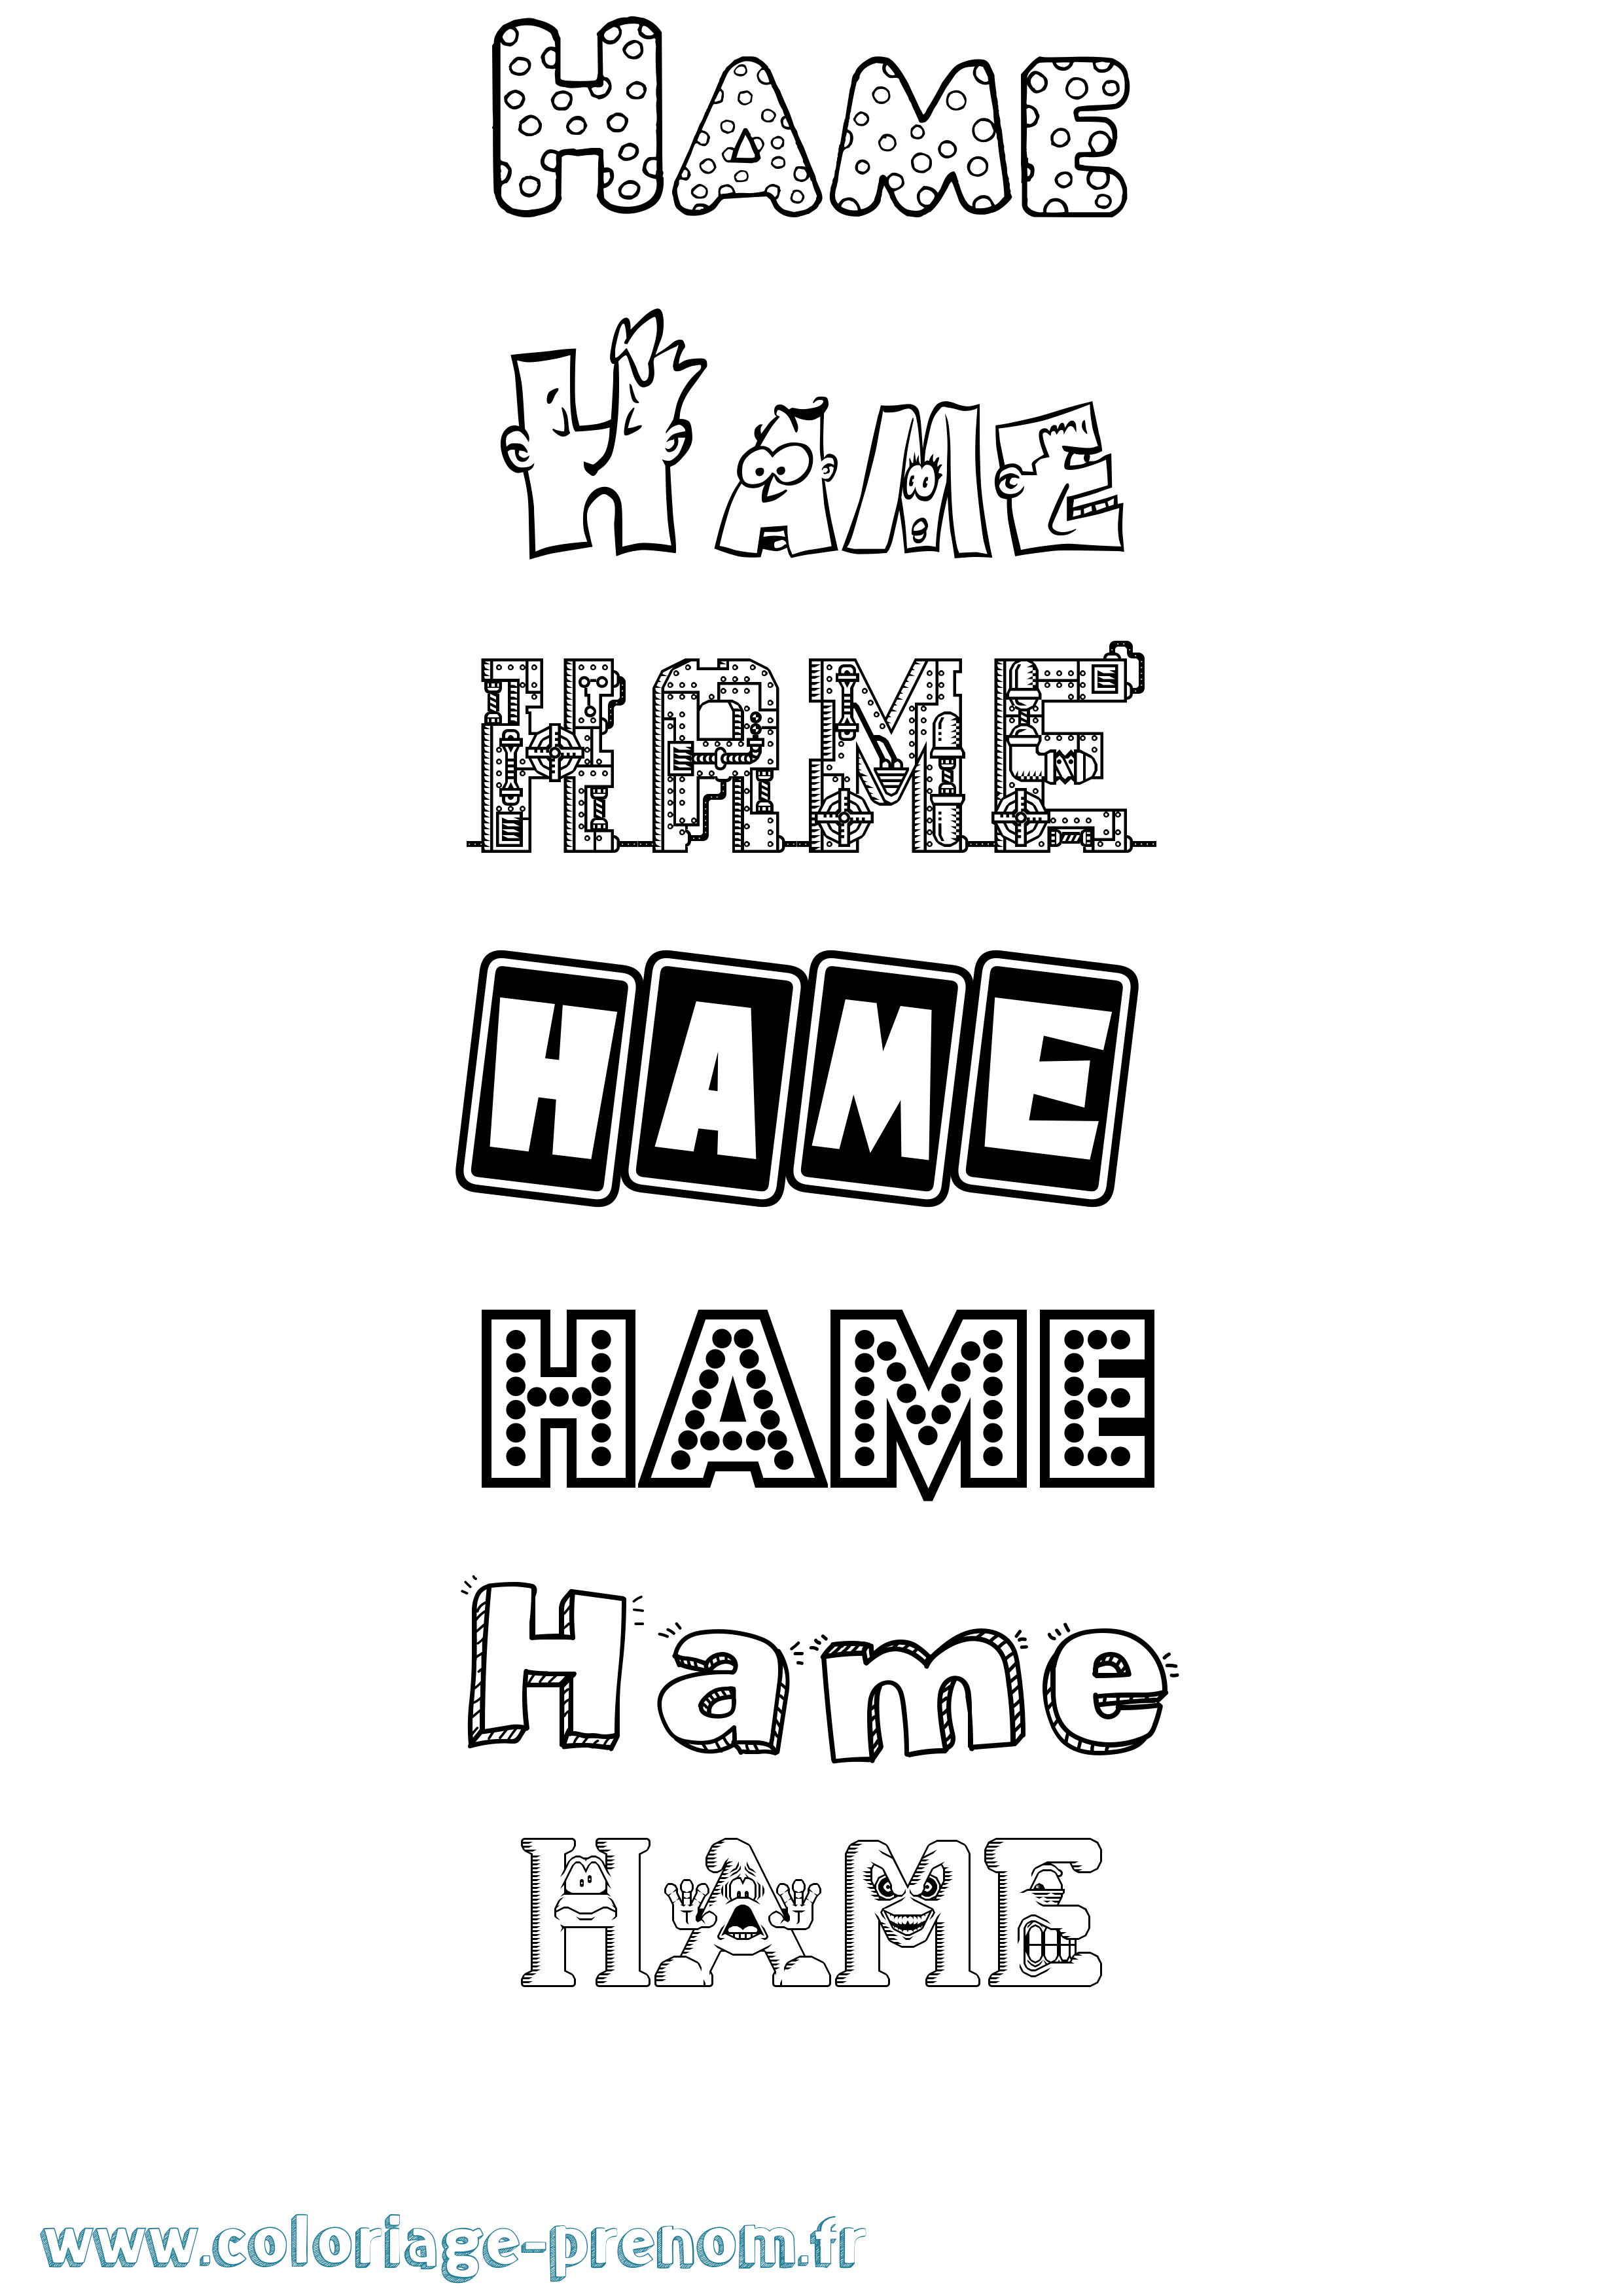 Coloriage prénom Hame Fun